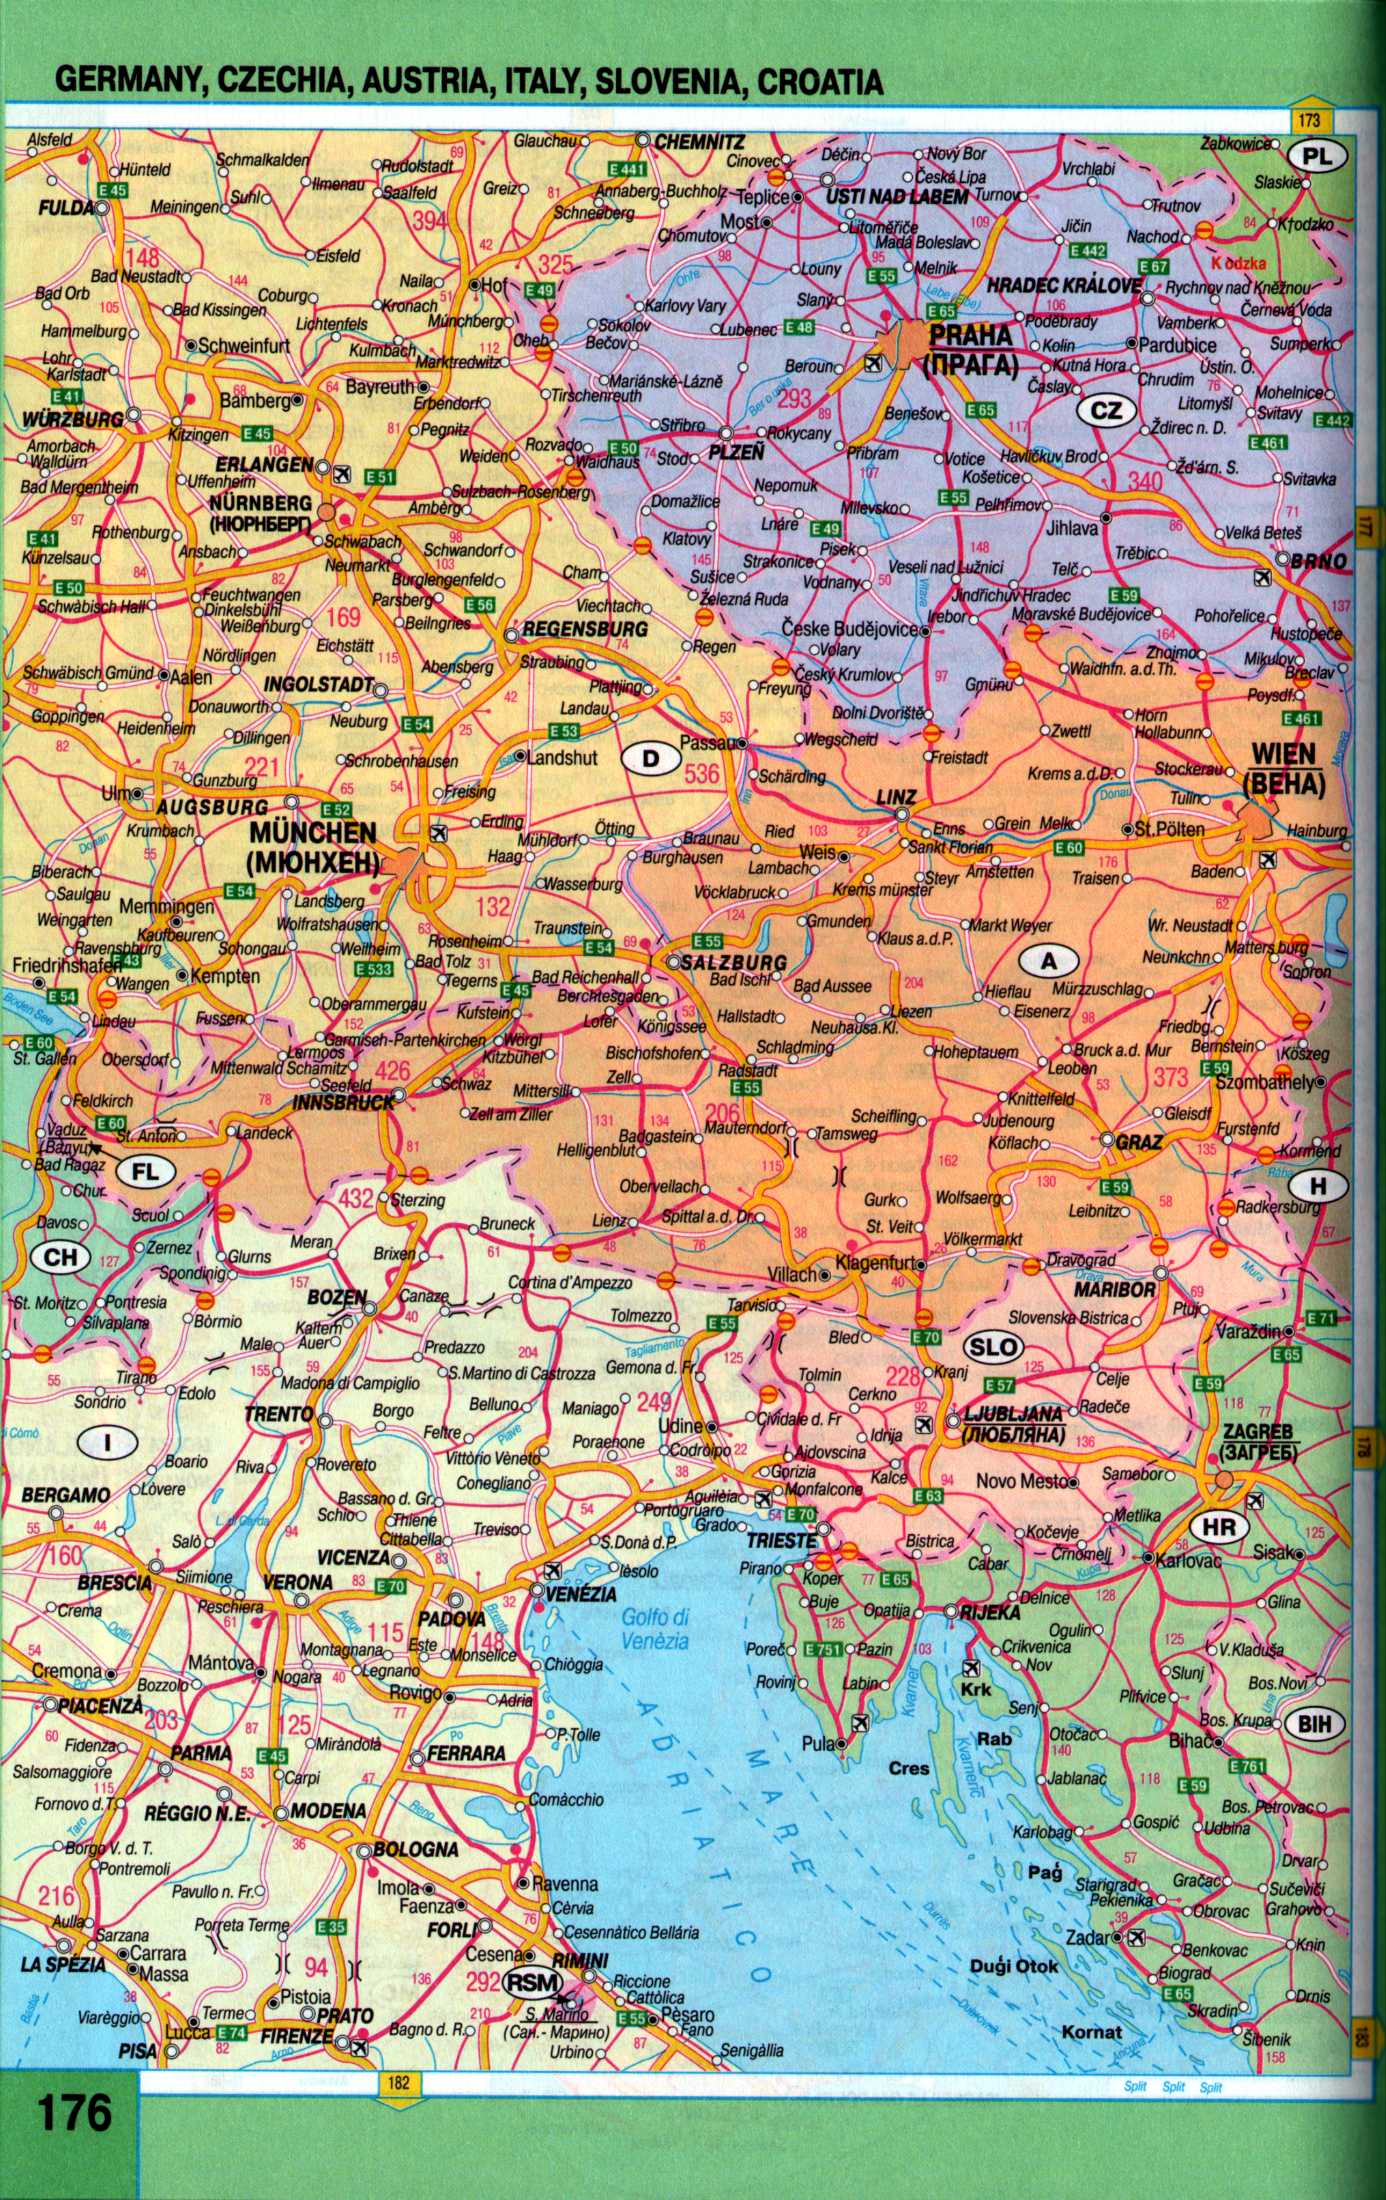 Австрия - карта авто дорог. Автомобильная карта Австрии, Чехии, Словении из авто атласа Европы 2009 года, A0 - 